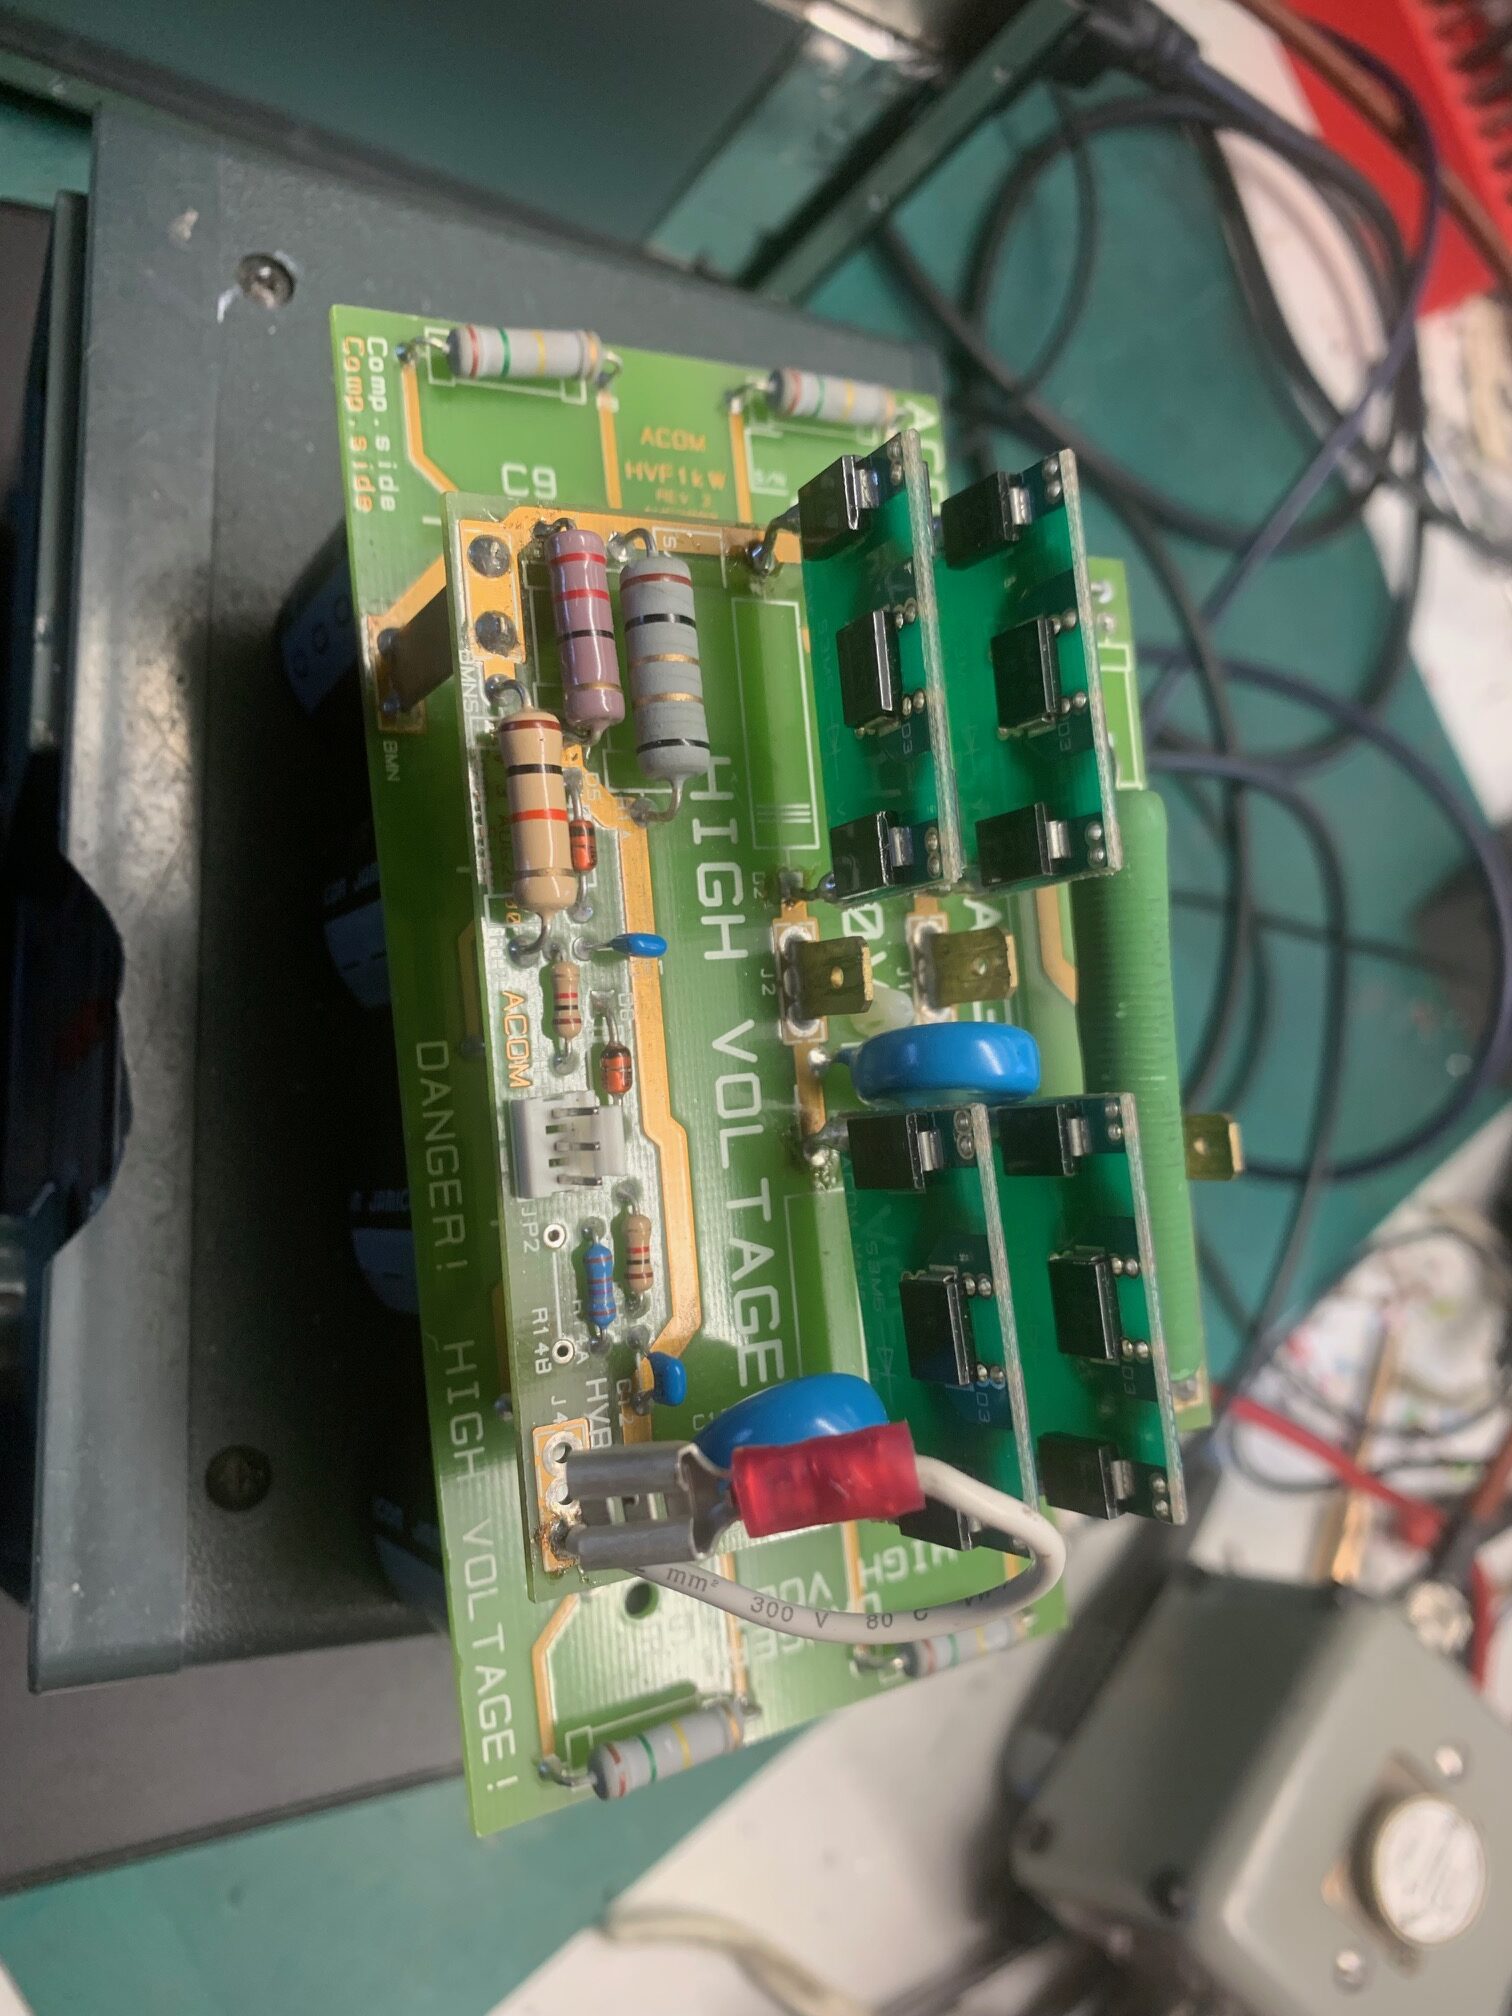 Acom 1000 HT Filter board repair